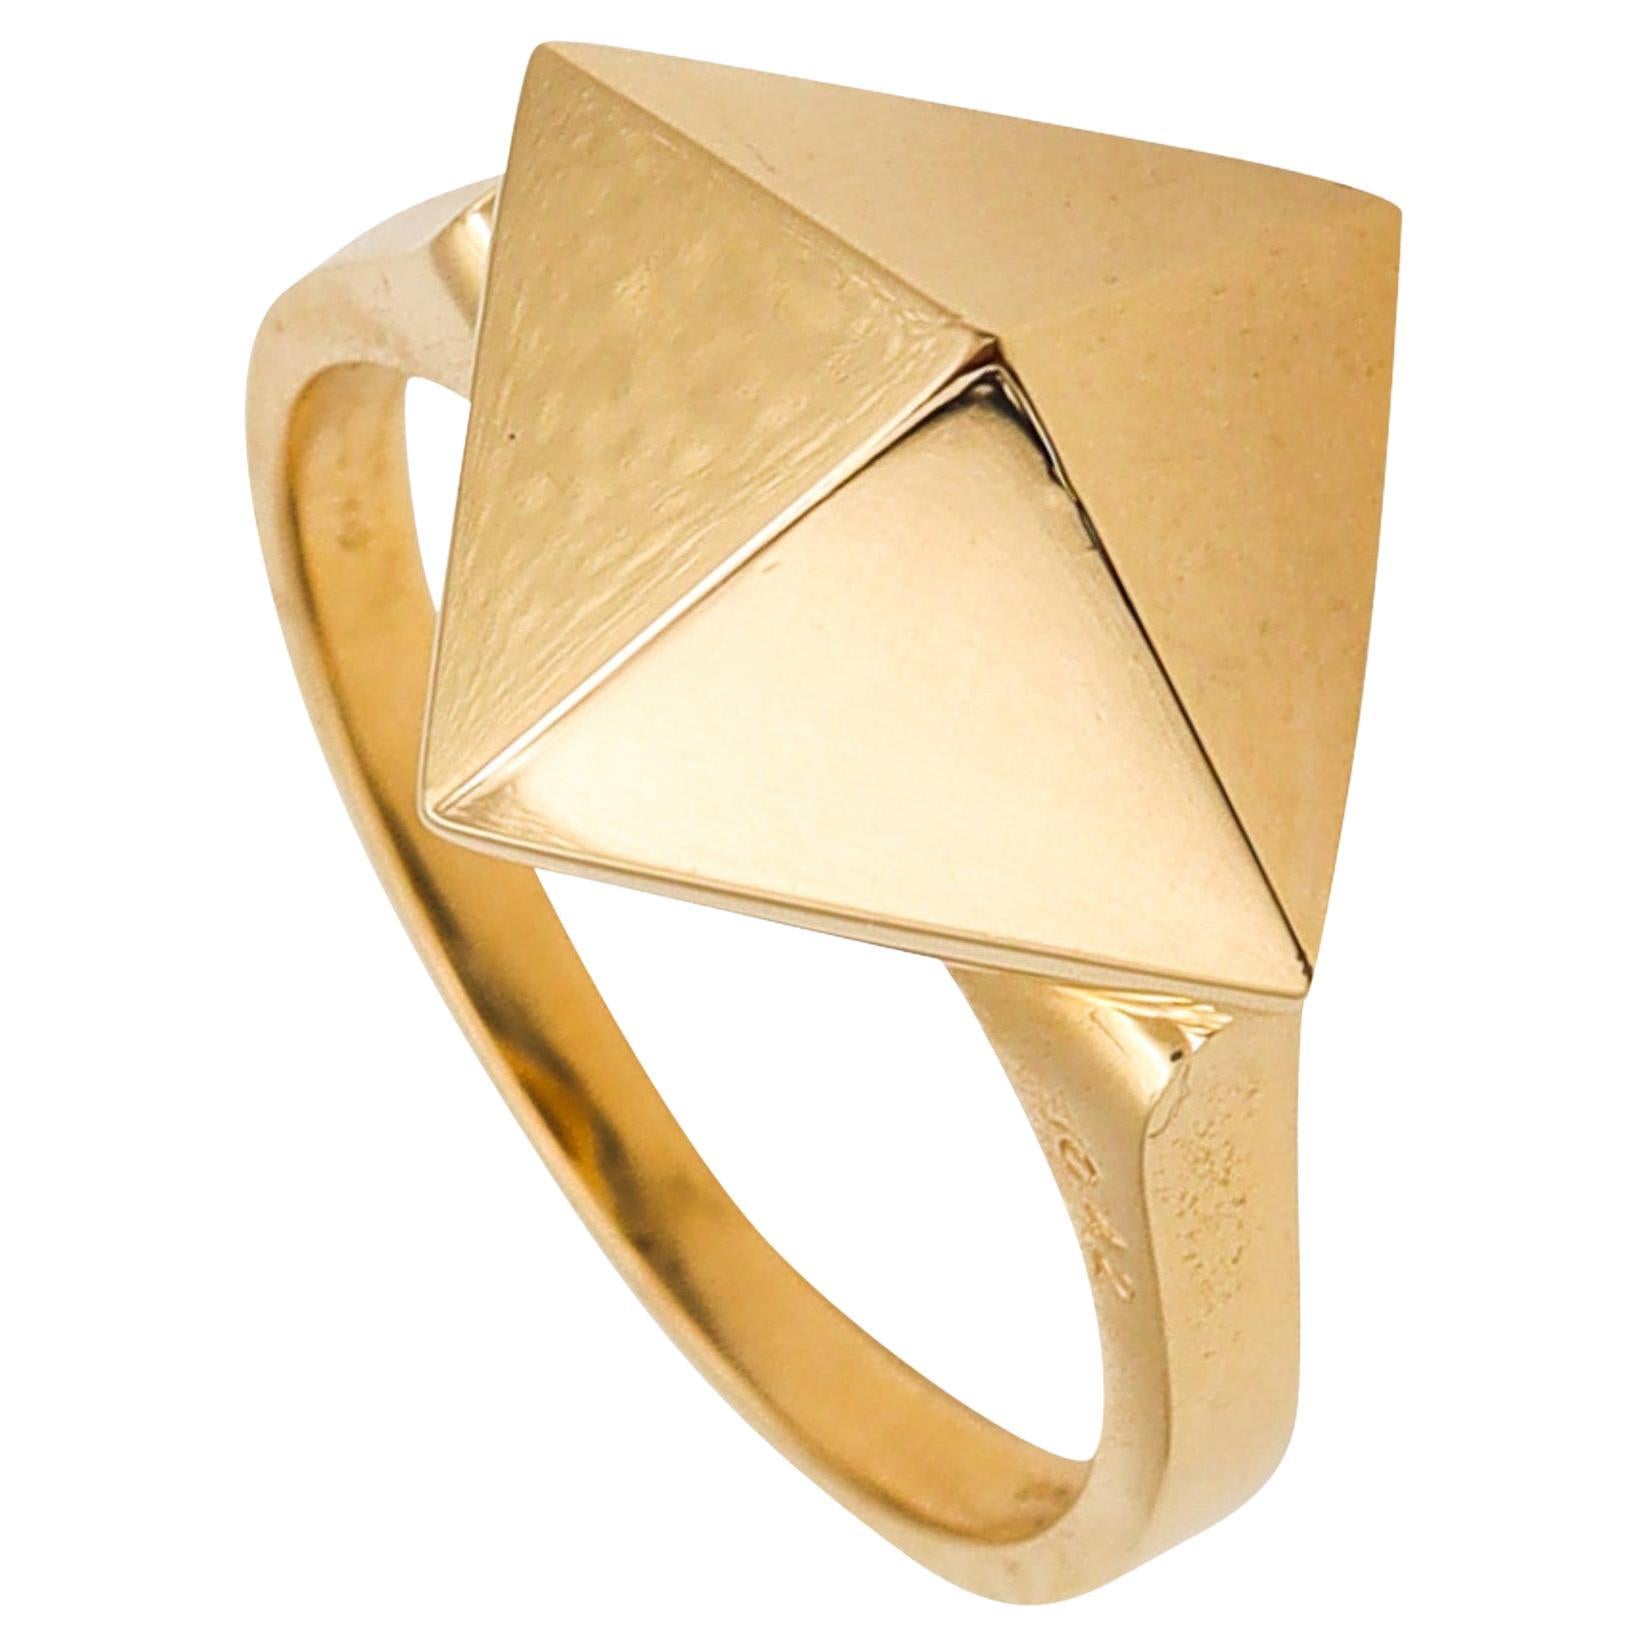 Aletto Brothers, petite bague empilable géométrique triangulaire en or jaune 18 carats